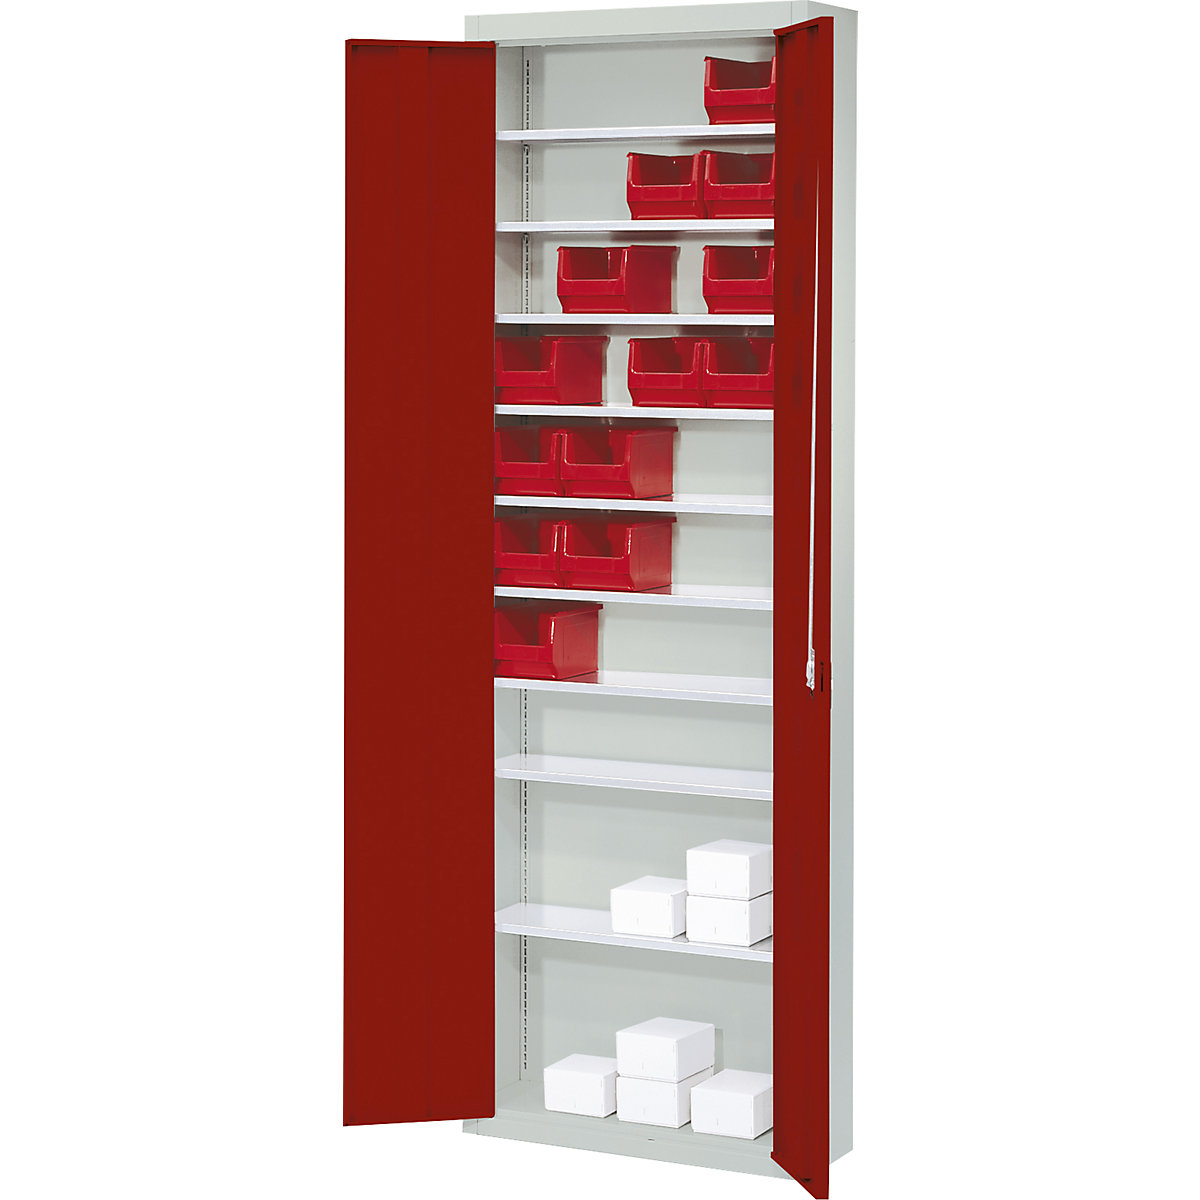 Skladová skříň, bez přepravek s viditelným obsahem – mauser, v x š x h 2150 x 680 x 280 mm, dvoubarevná, korpus šedý, dveře červené-5